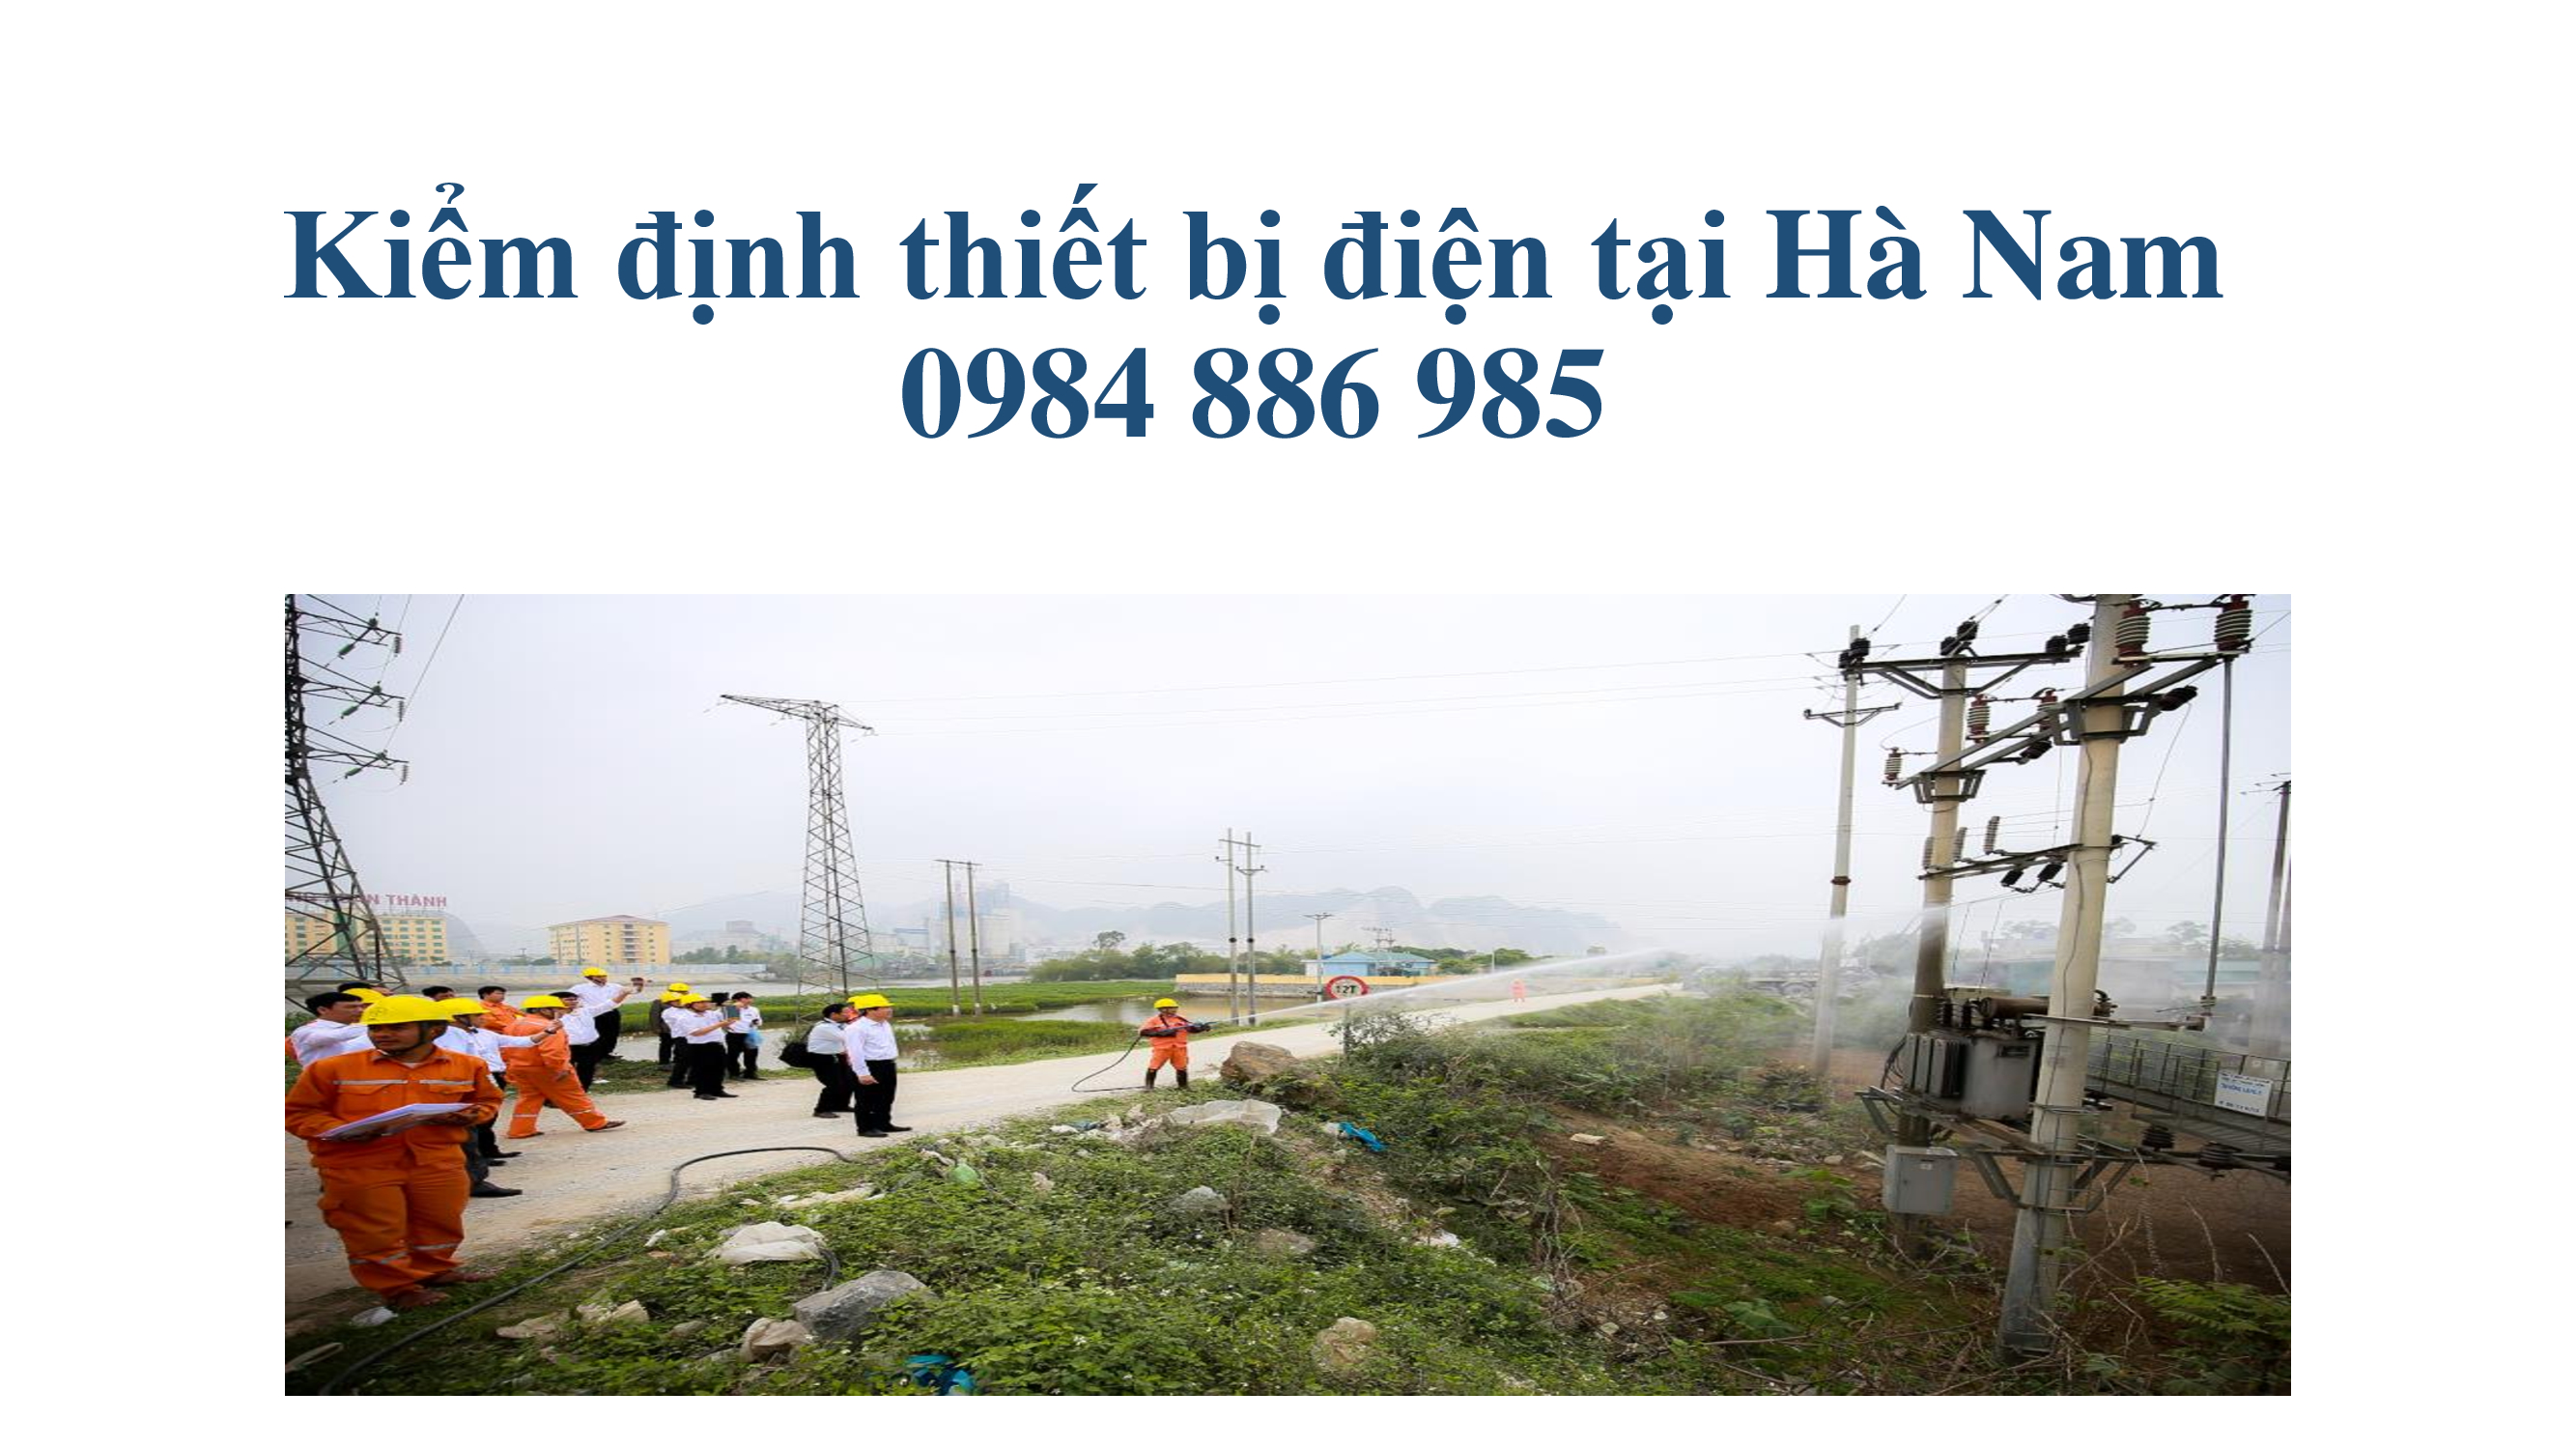 Kiểm định thiết bị điện tại Hà Nam